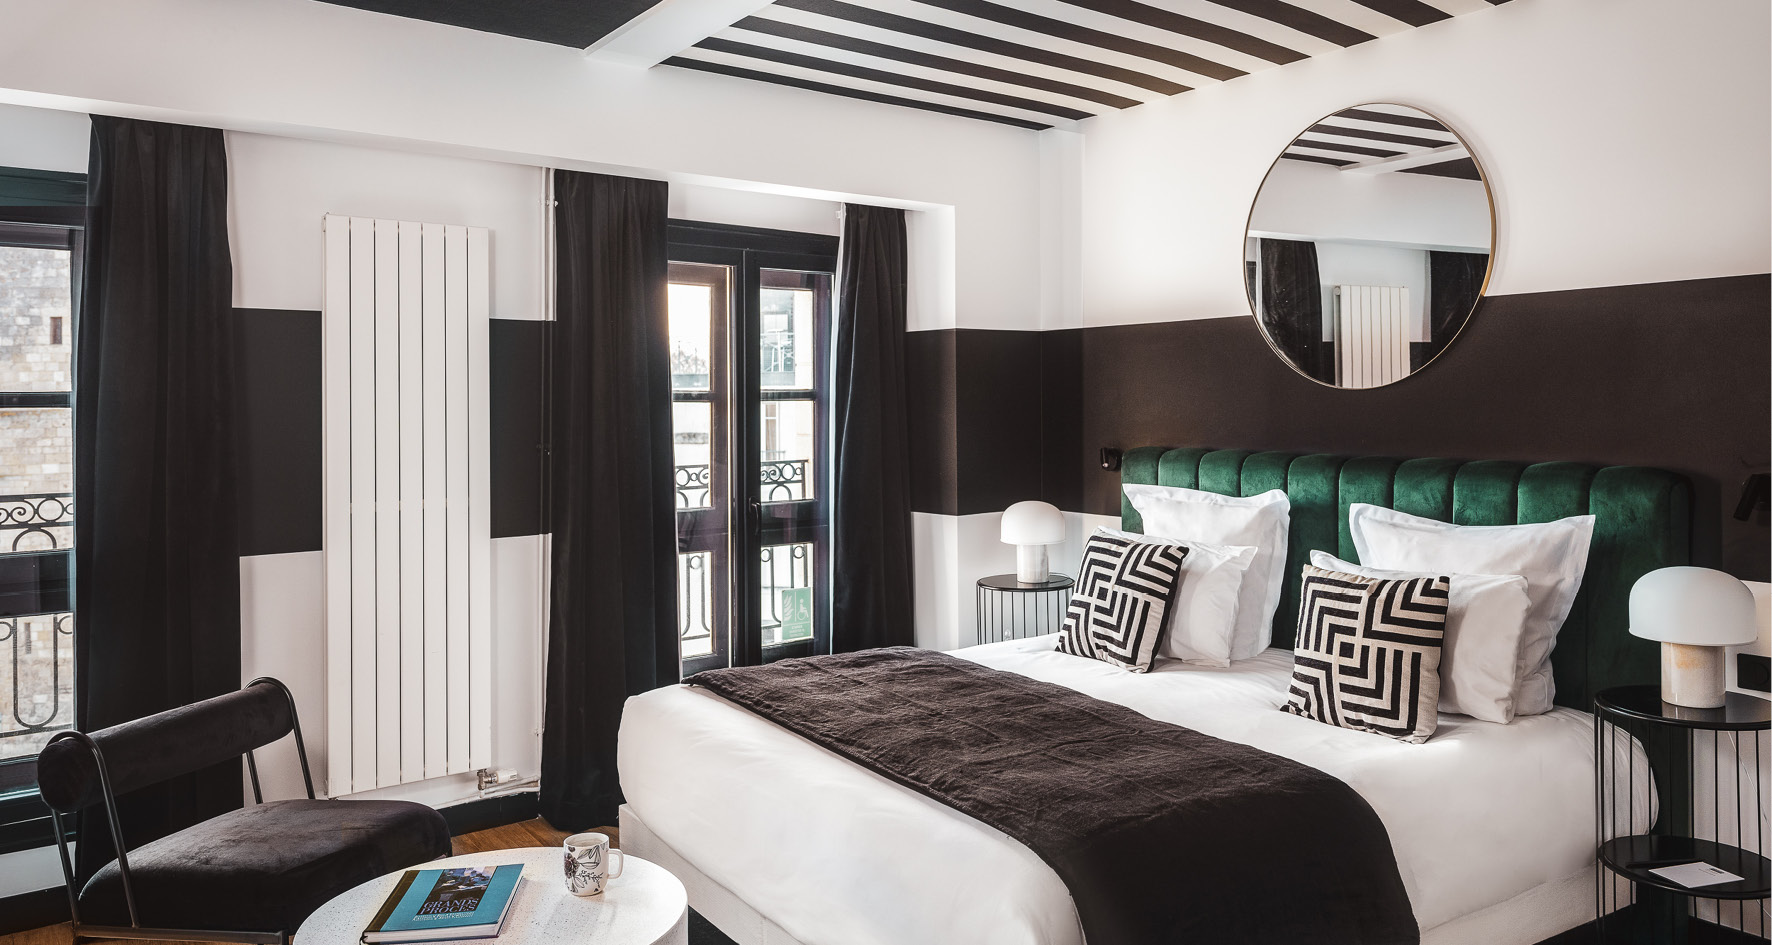 La Rochelle - Maisons du Monde Hotel & Suites - ©Nicolas Anetson